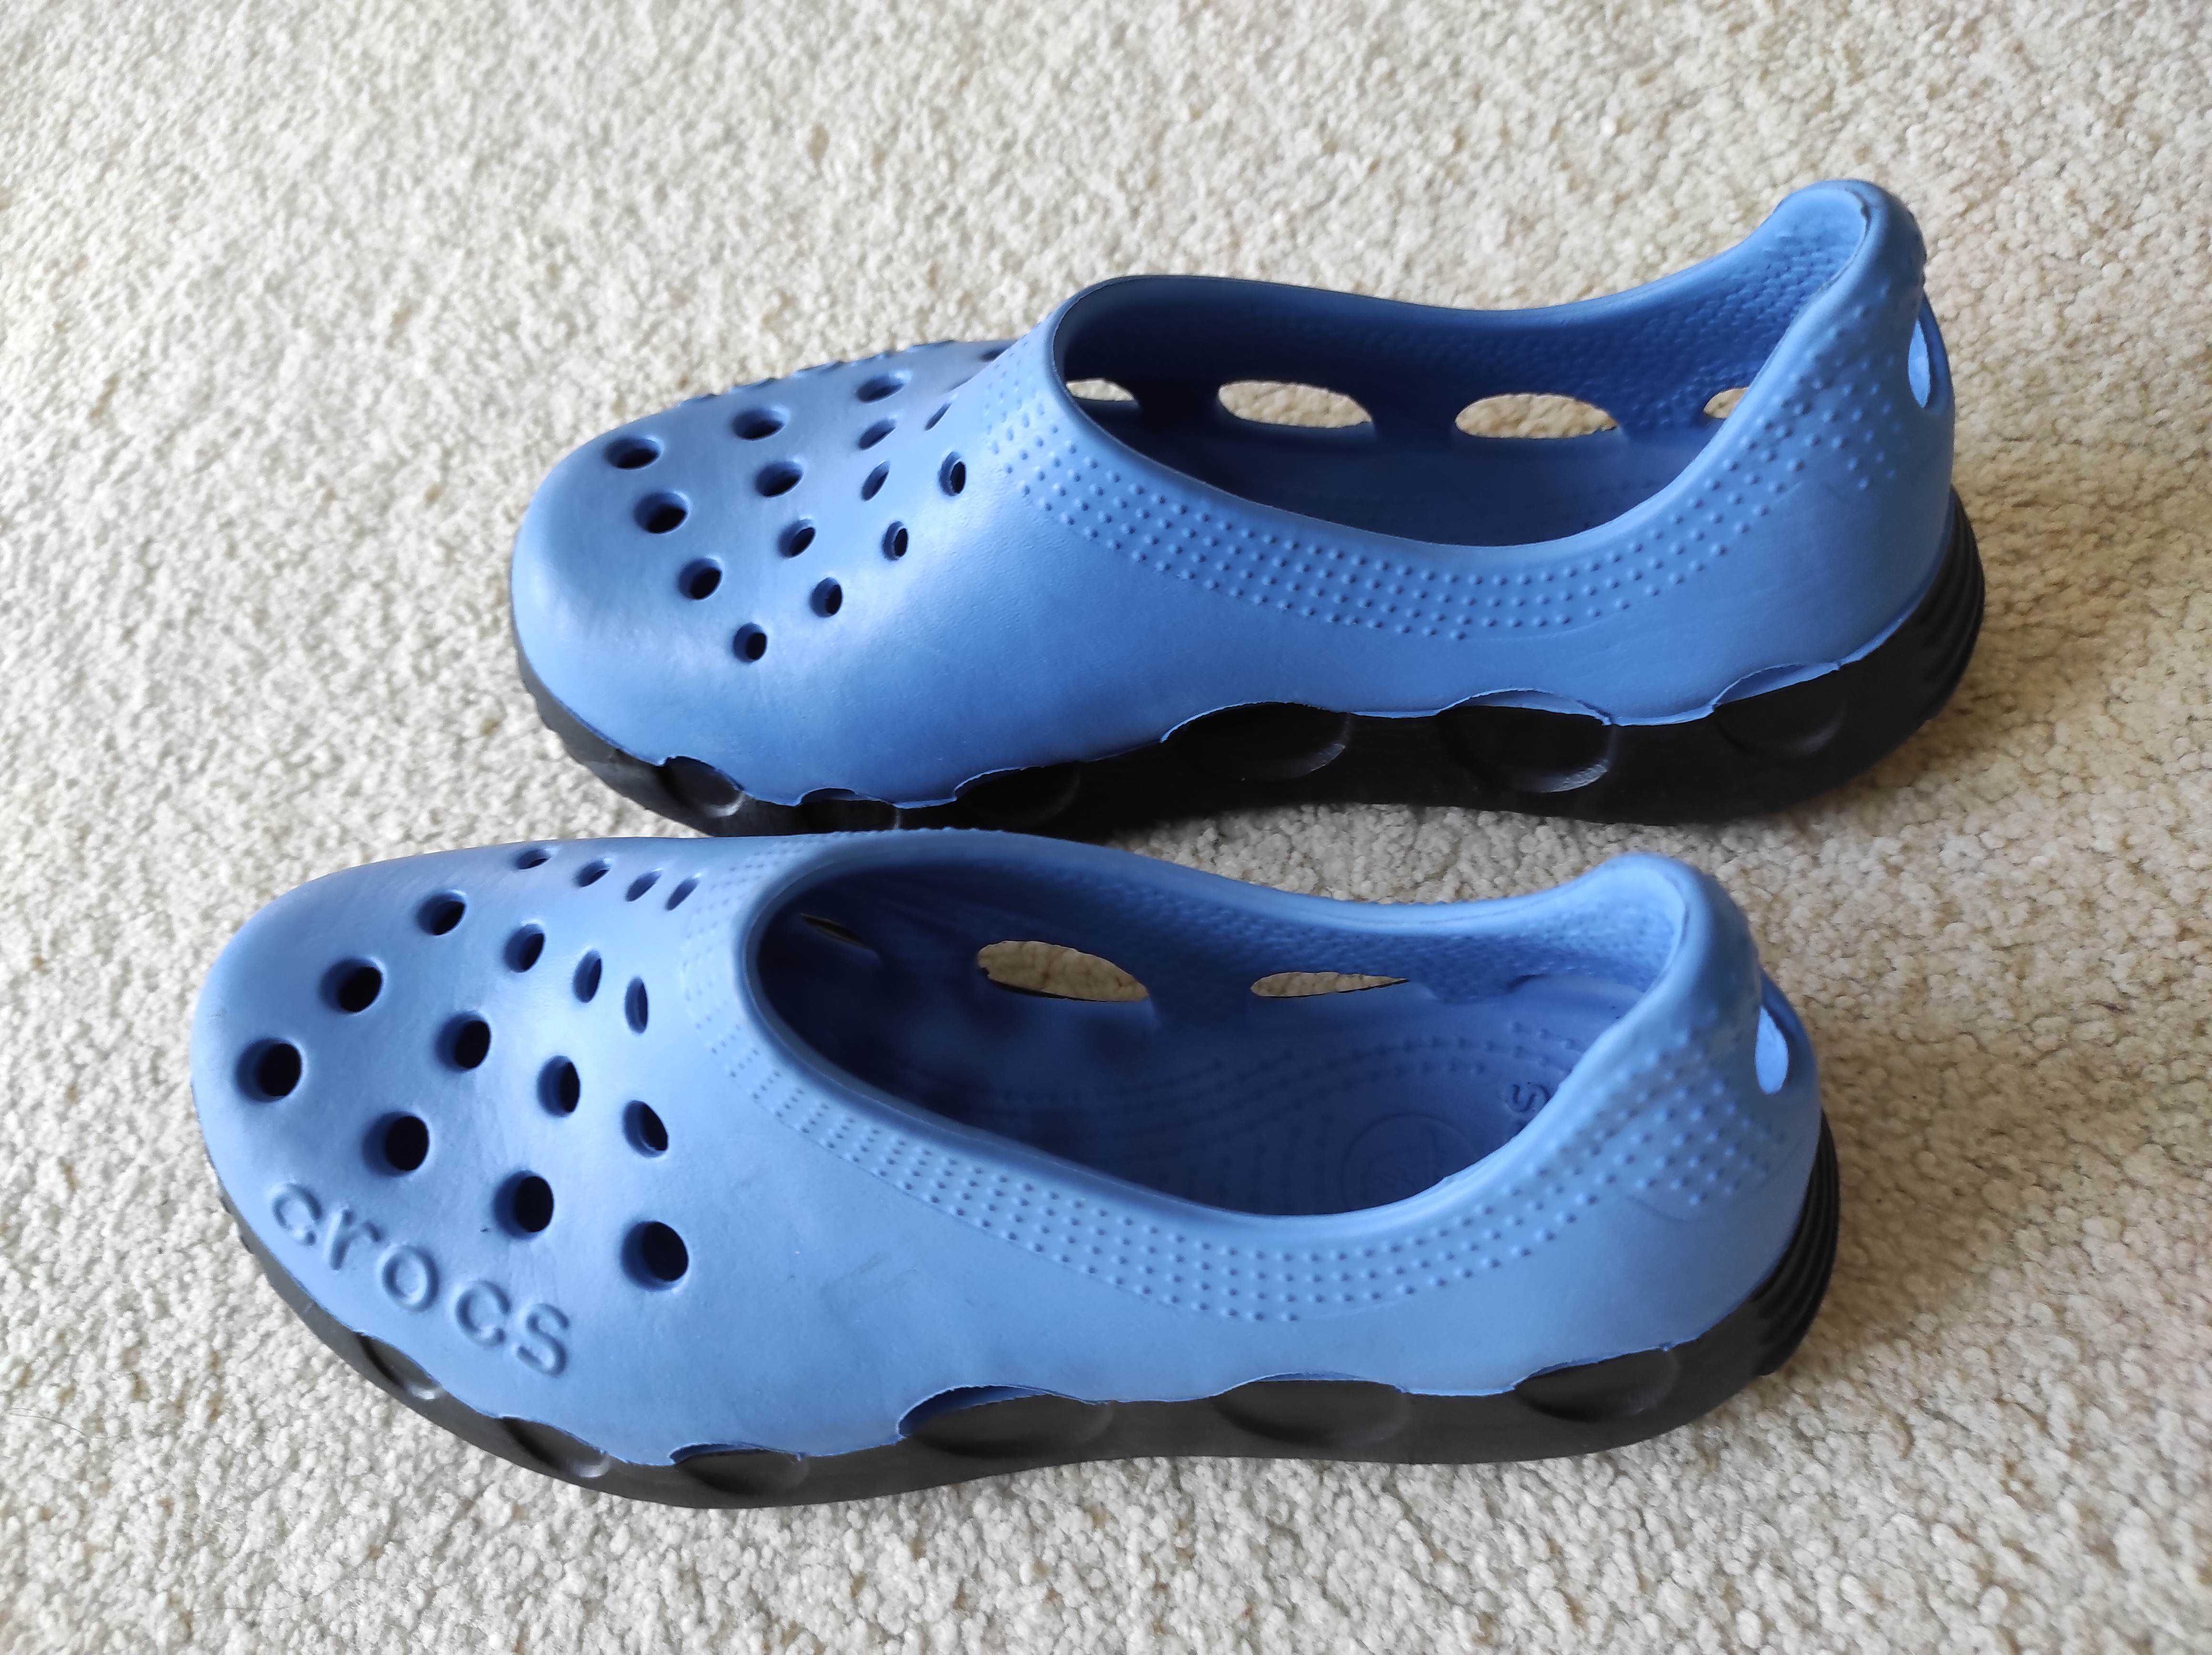 Buty dla dziecka CROCS lato woda bezpieczne niebieskie J2 rozm 34-35